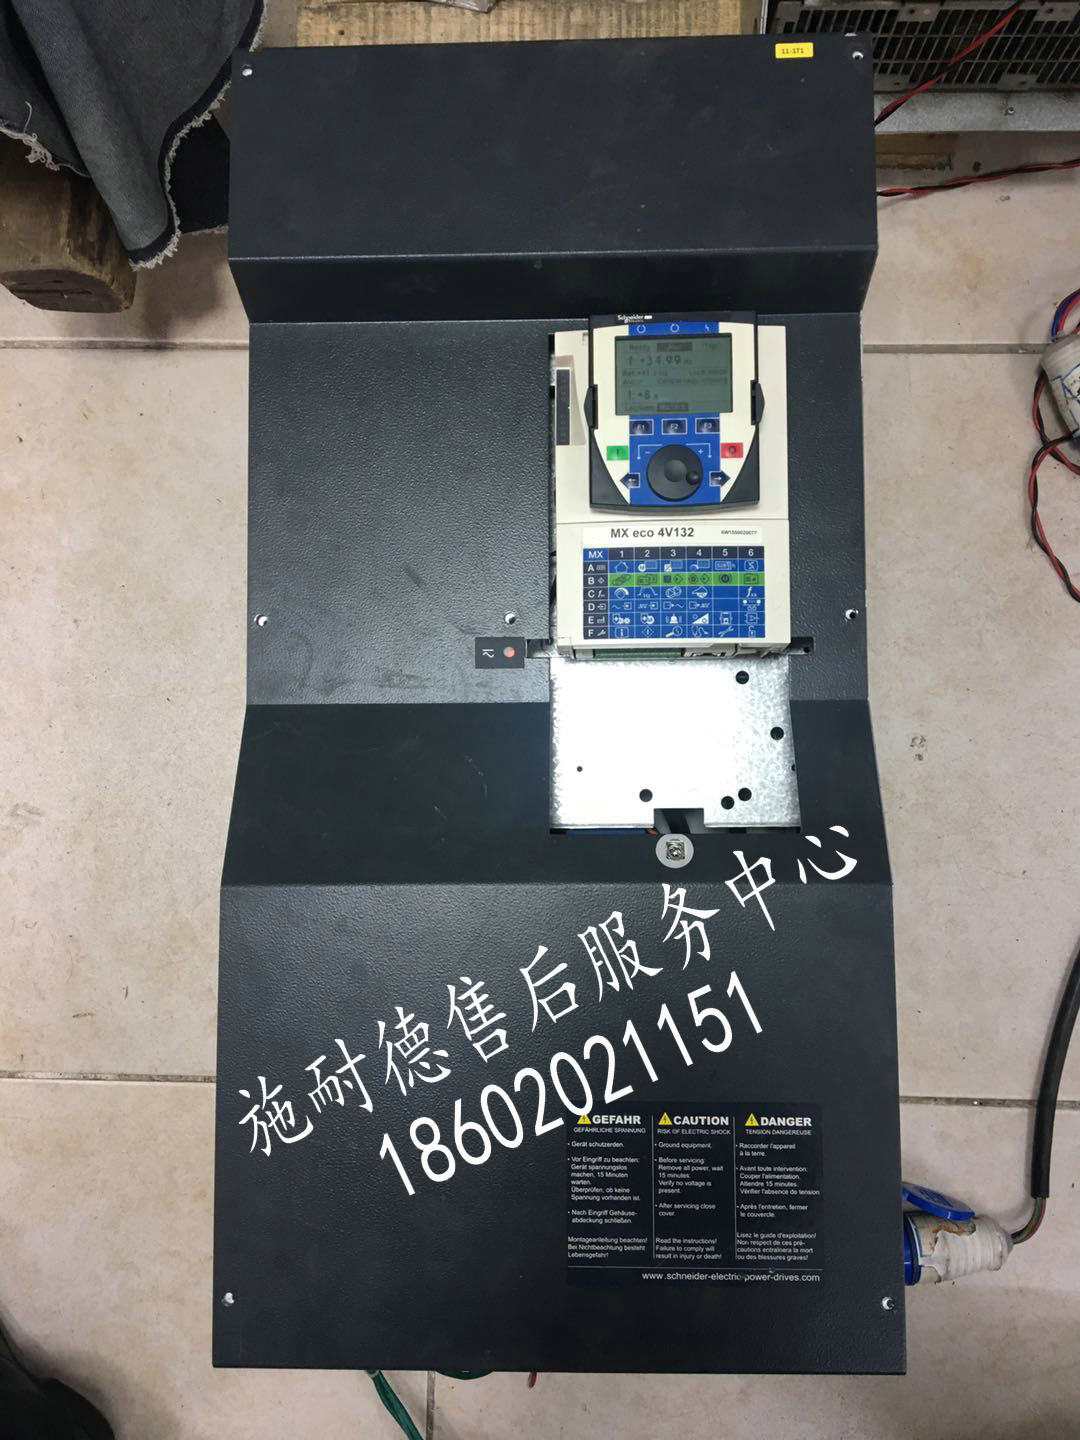 江苏省、福建省海瑞克盾构机PDRIVE eco 4V160变频器维修